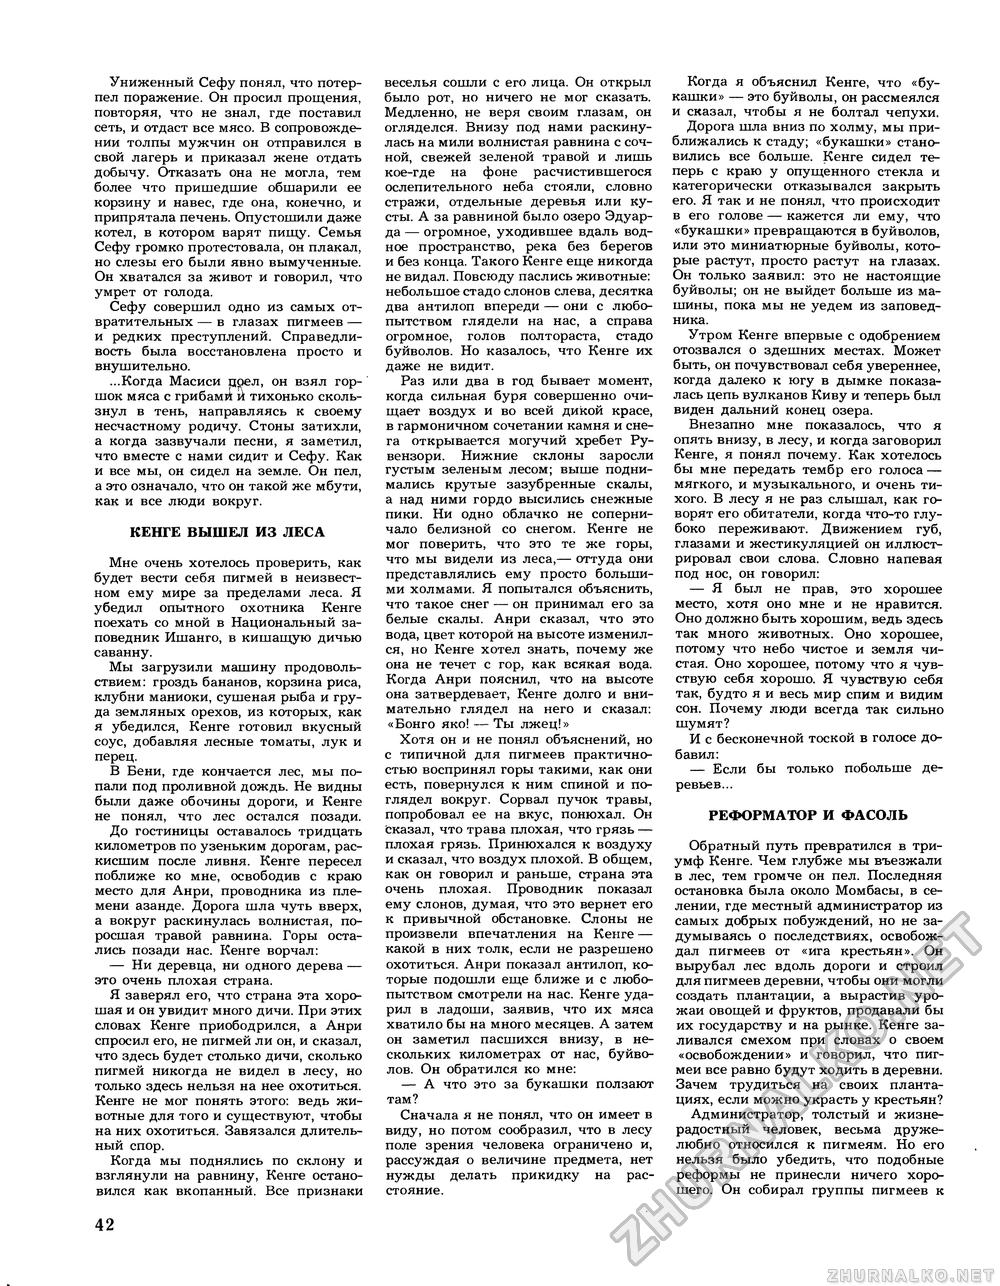 Вокруг света 1981-12, страница 44